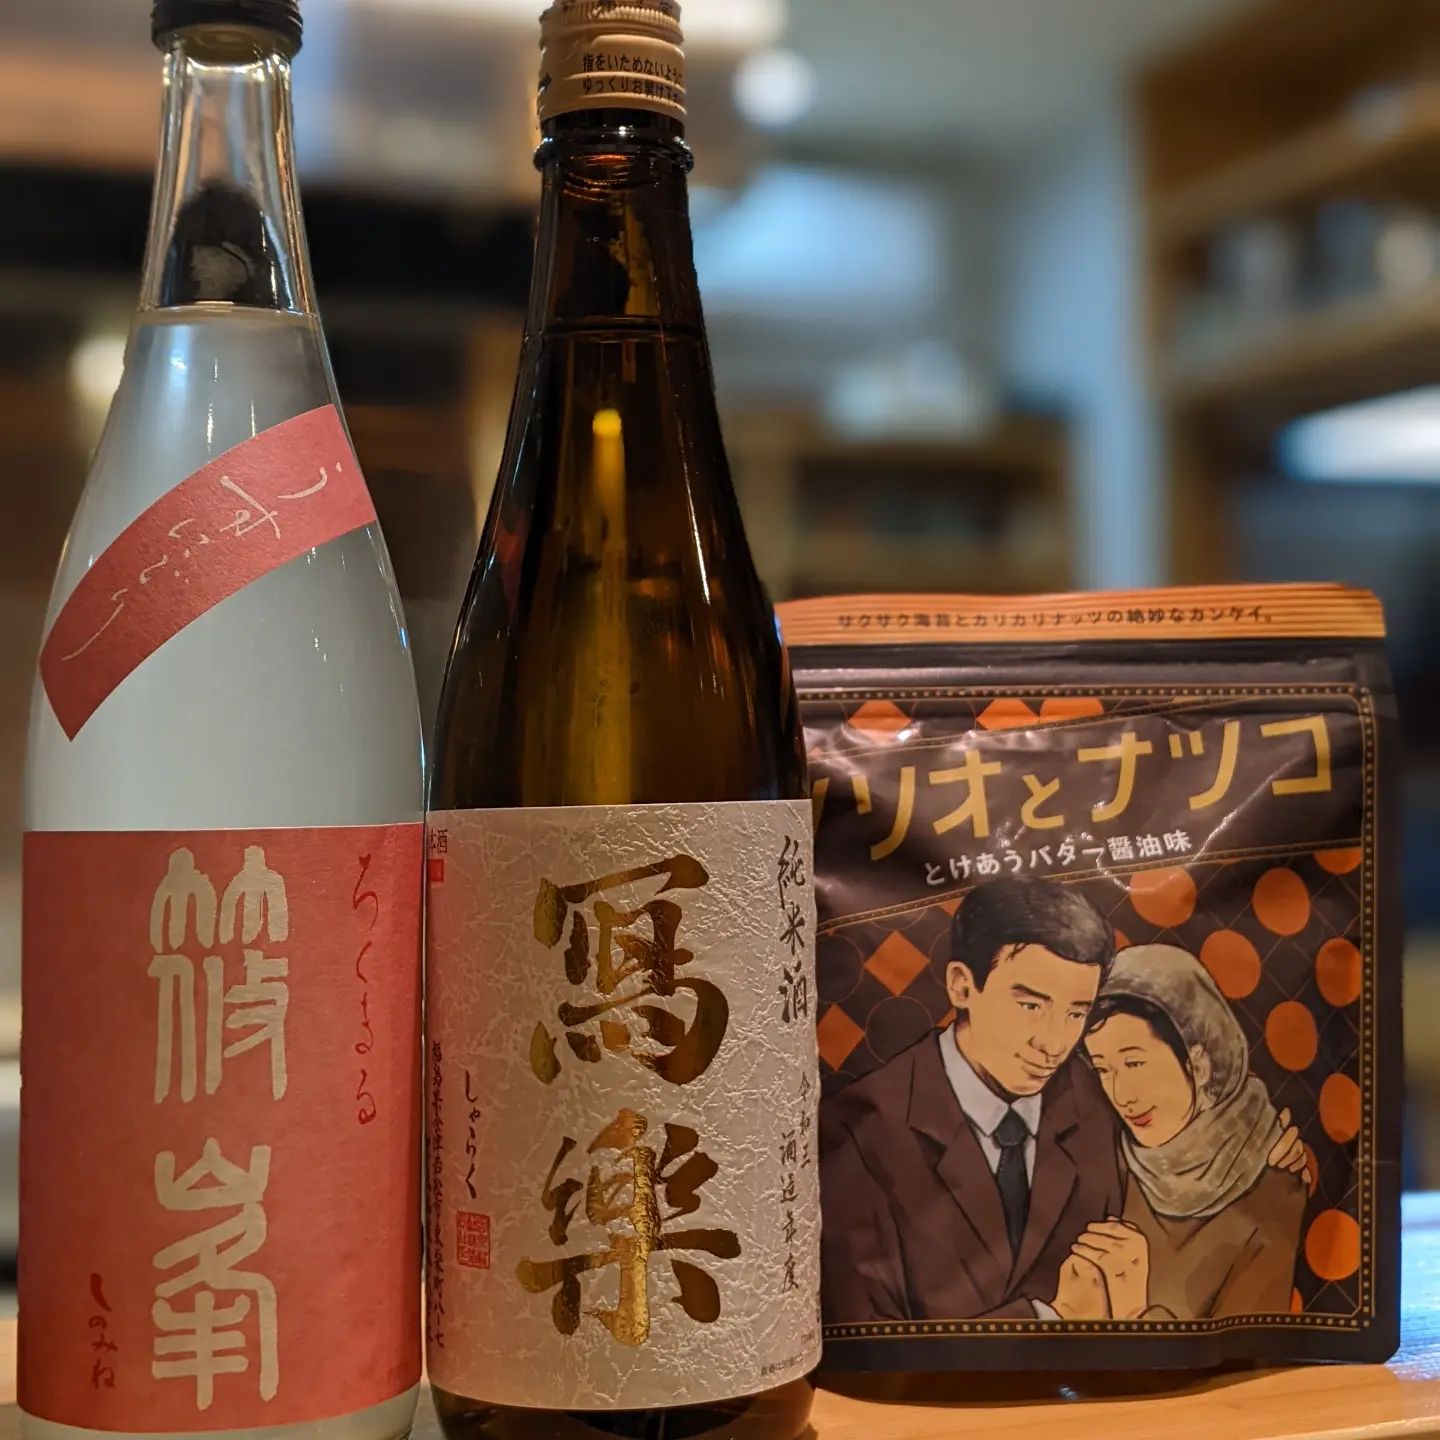 今夜のおすすめ日本酒。ノリオとナツコはおまけで写真撮影に。親方は時々面白いもの買ってきます (Instagram)